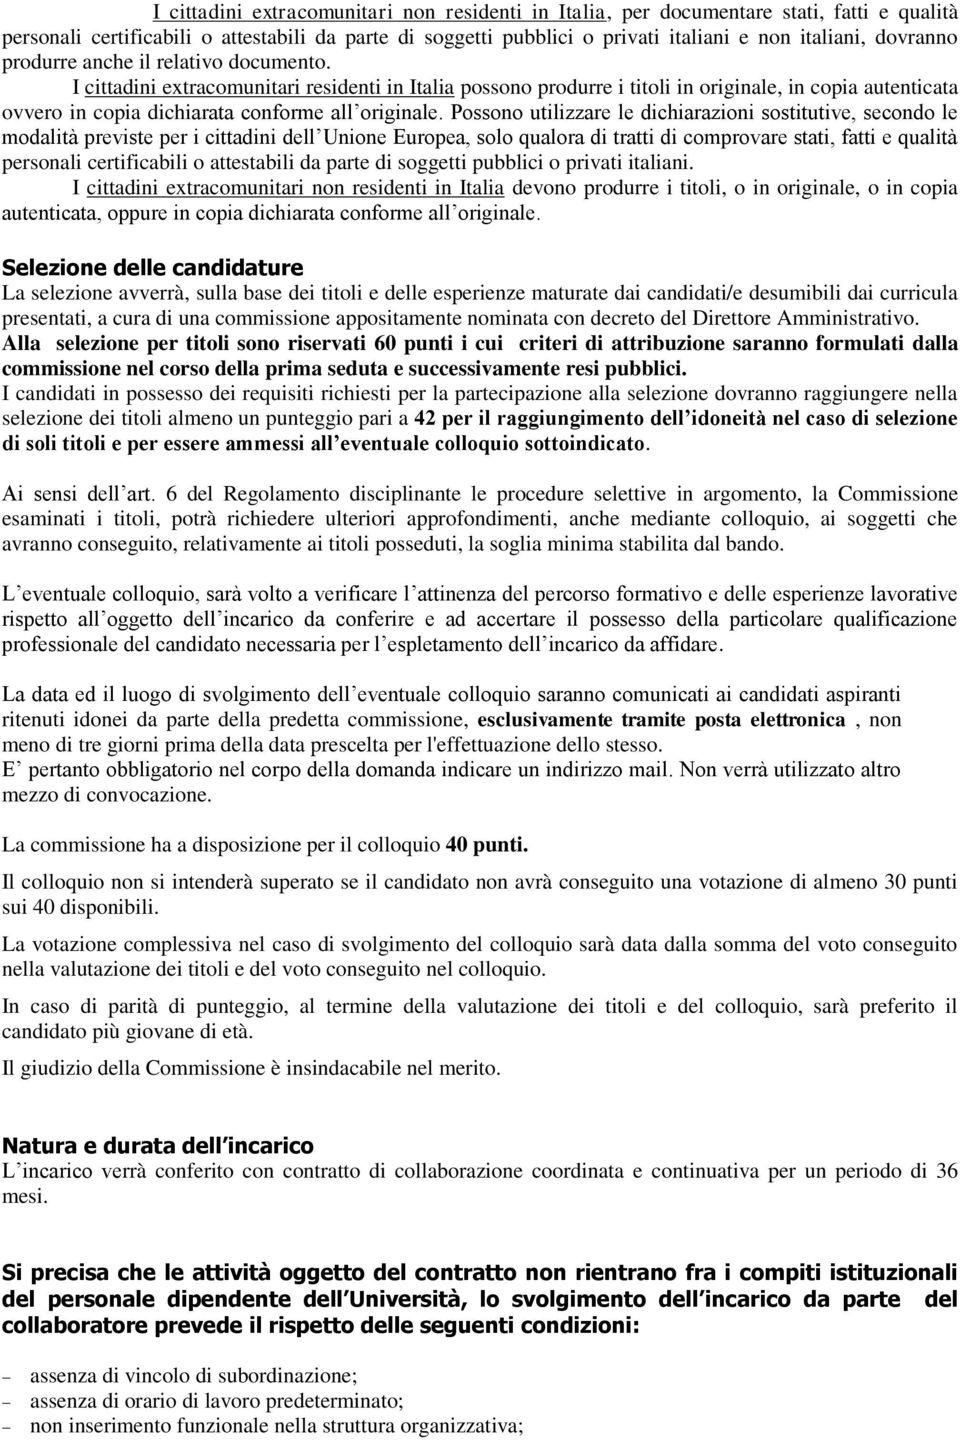 I cittadini extracomunitari residenti in Italia possono produrre i titoli in originale, in copia autenticata ovvero in copia dichiarata conforme all originale.